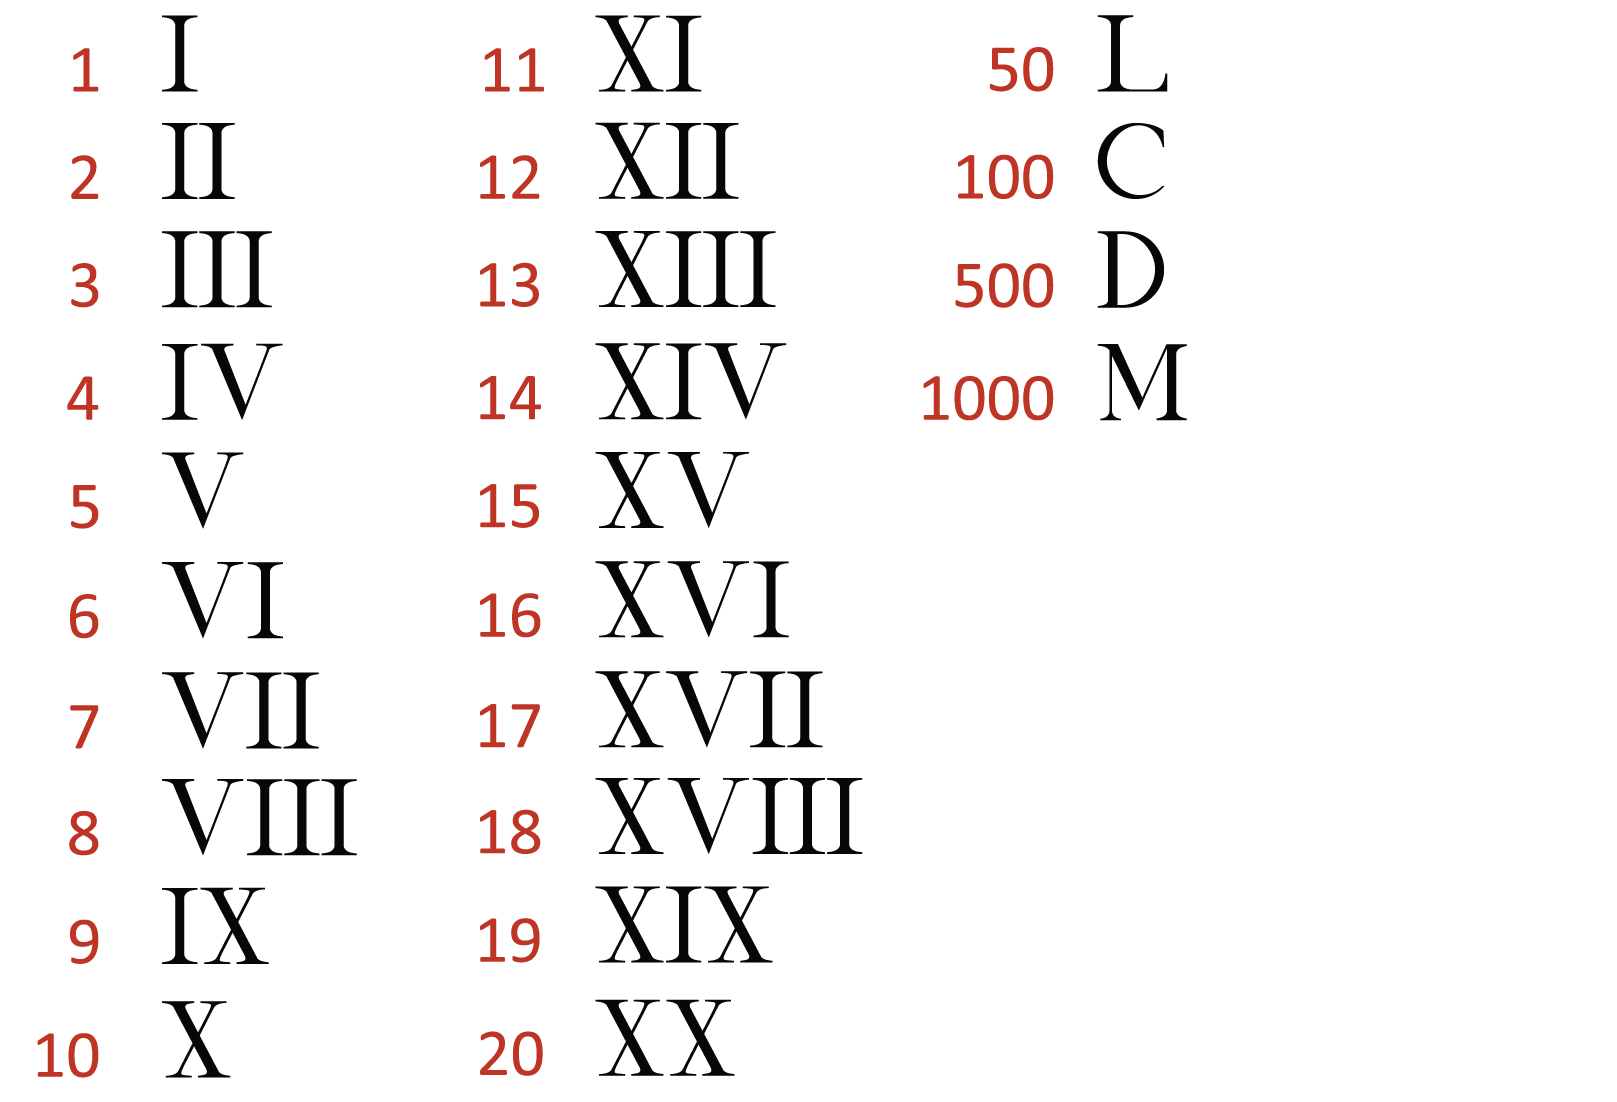 Римский конвертер. Века таблица римскими цифрами до 20. Таблица римских цифр от 1 до 1000. Римские цифры от 1 до 10000 таблица. Таблица римских цифр от 1 до 20.